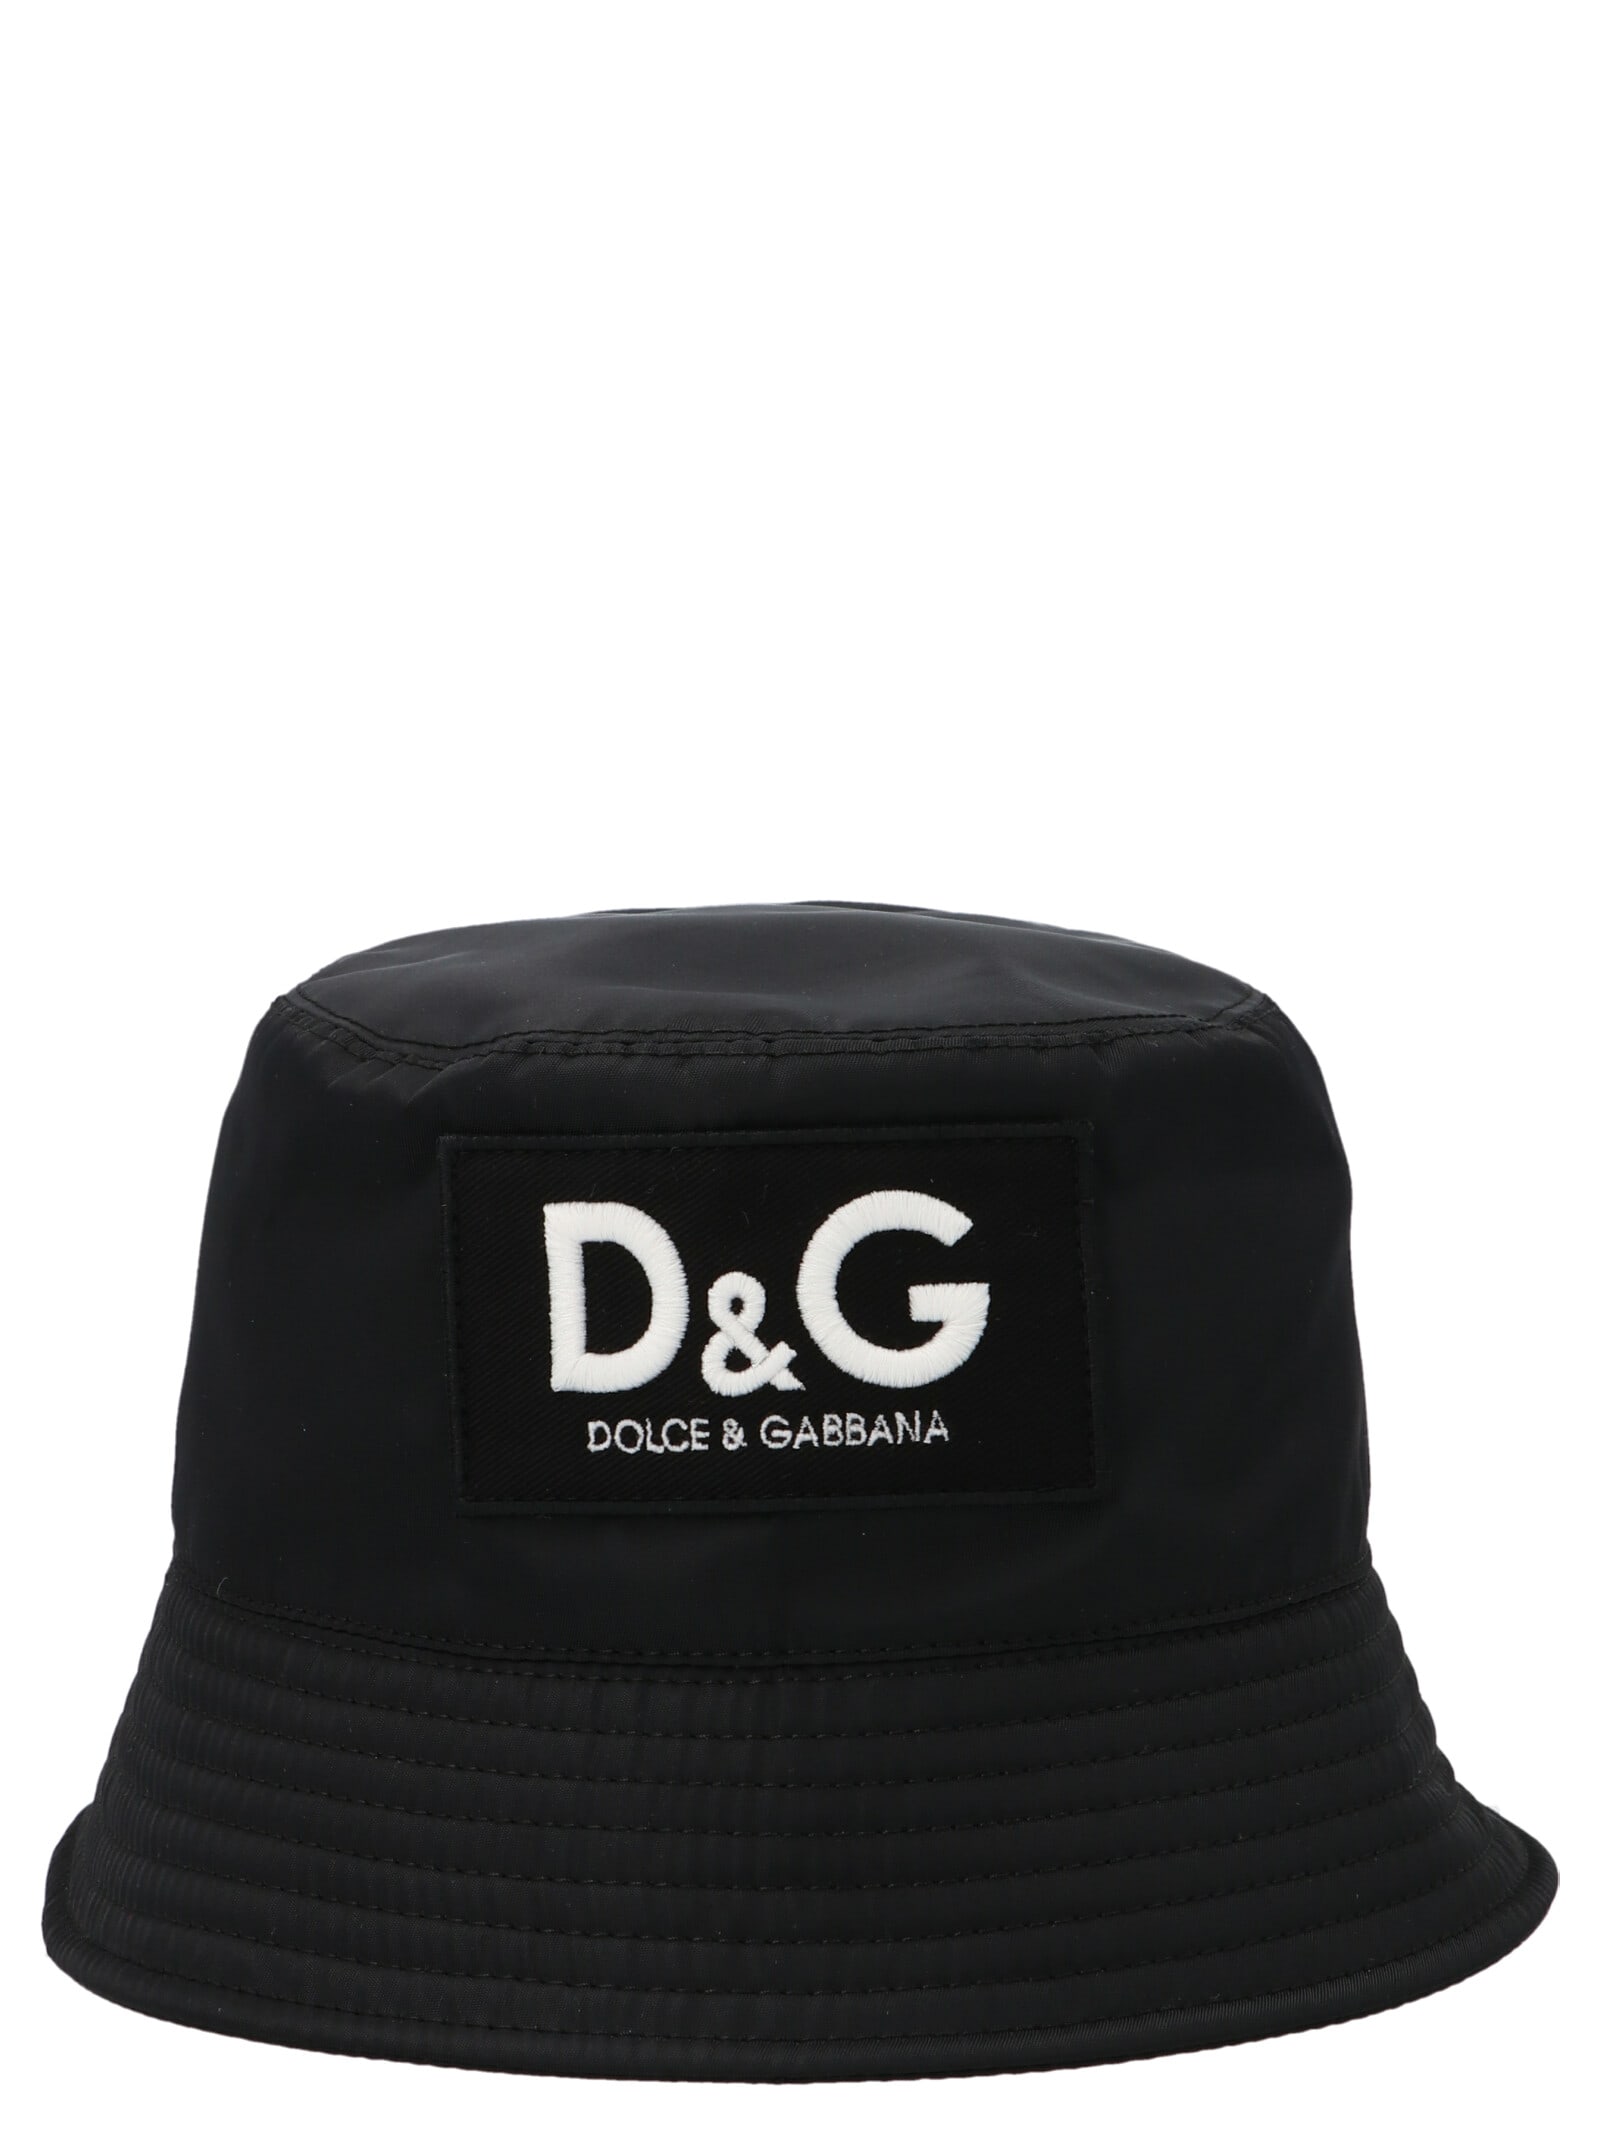 DOLCE & GABBANA BUCKET HAT,GH701AGEV48 N0000